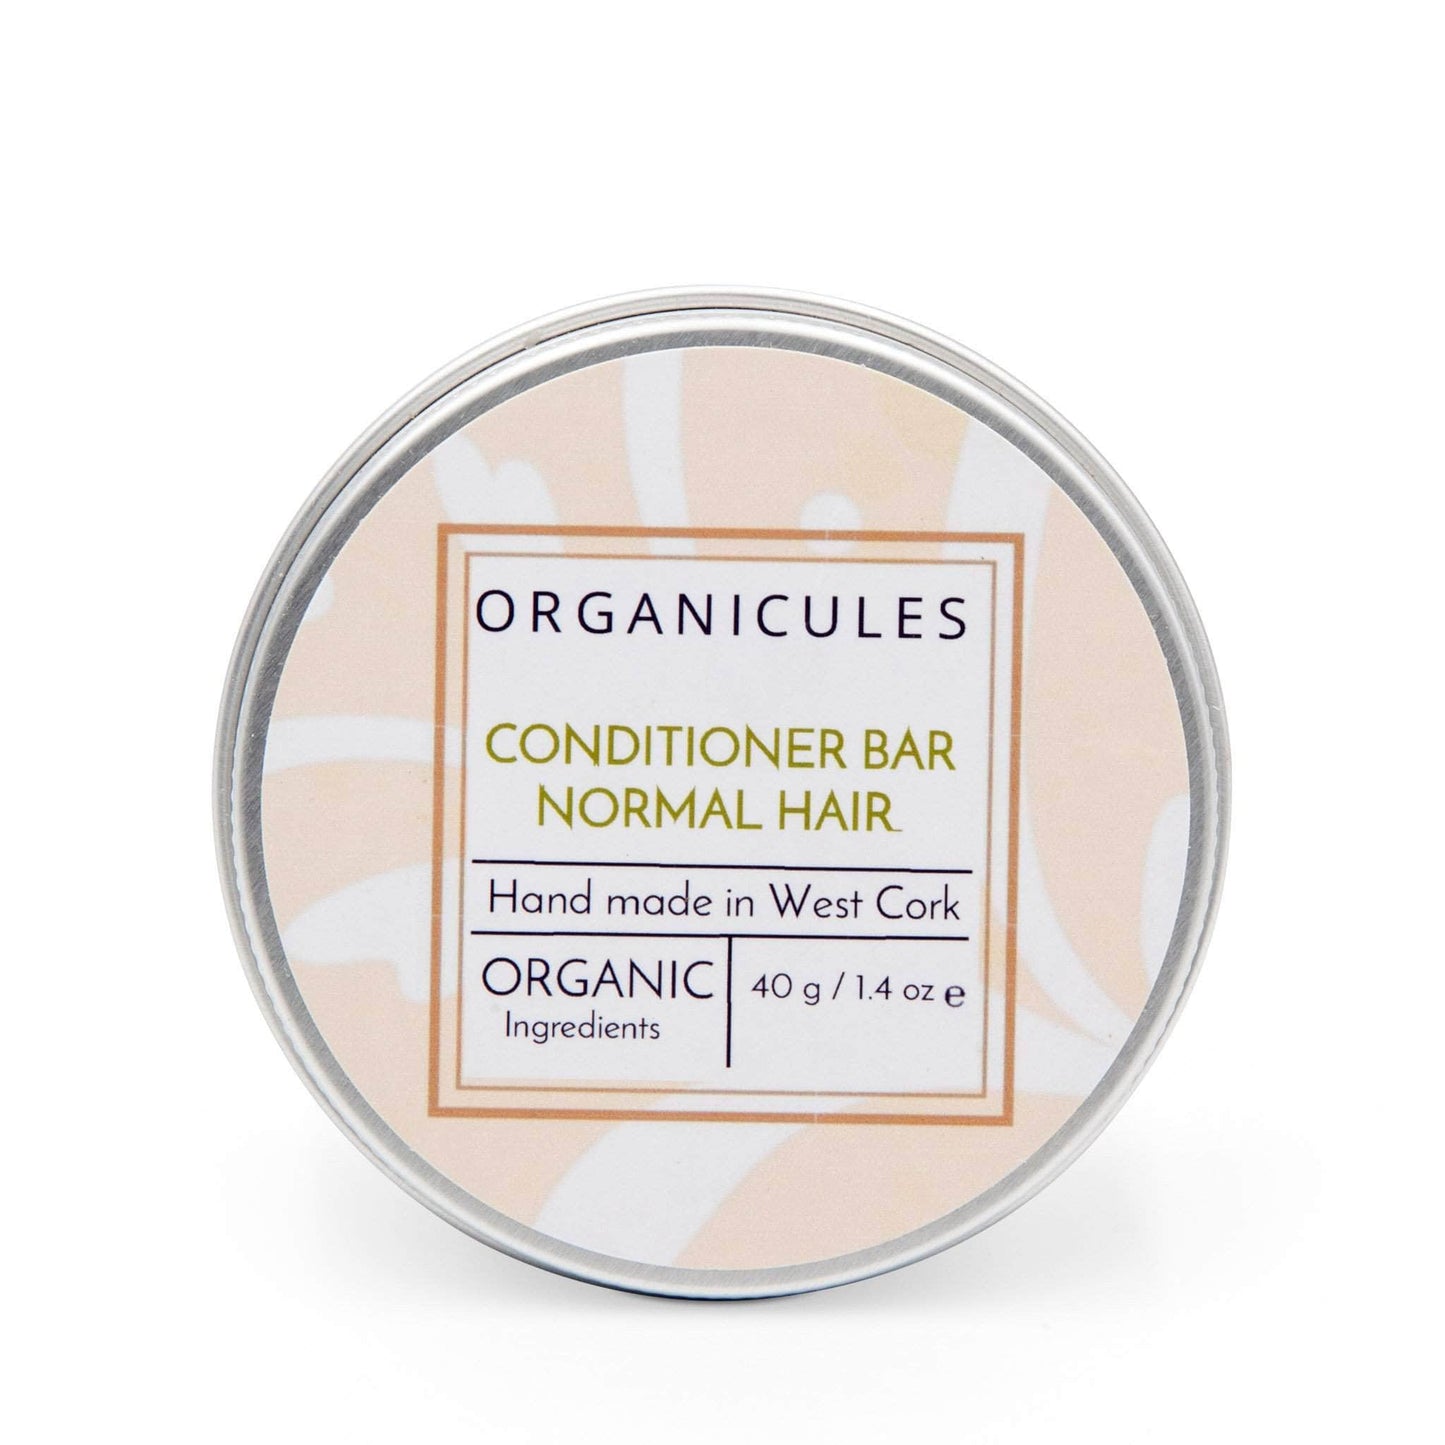 Organicules Conditioner Organicules Conditioner Bar in Tin - For Normal Hair - Mandarin, Sweet Orange, Bergamot & Patchouli